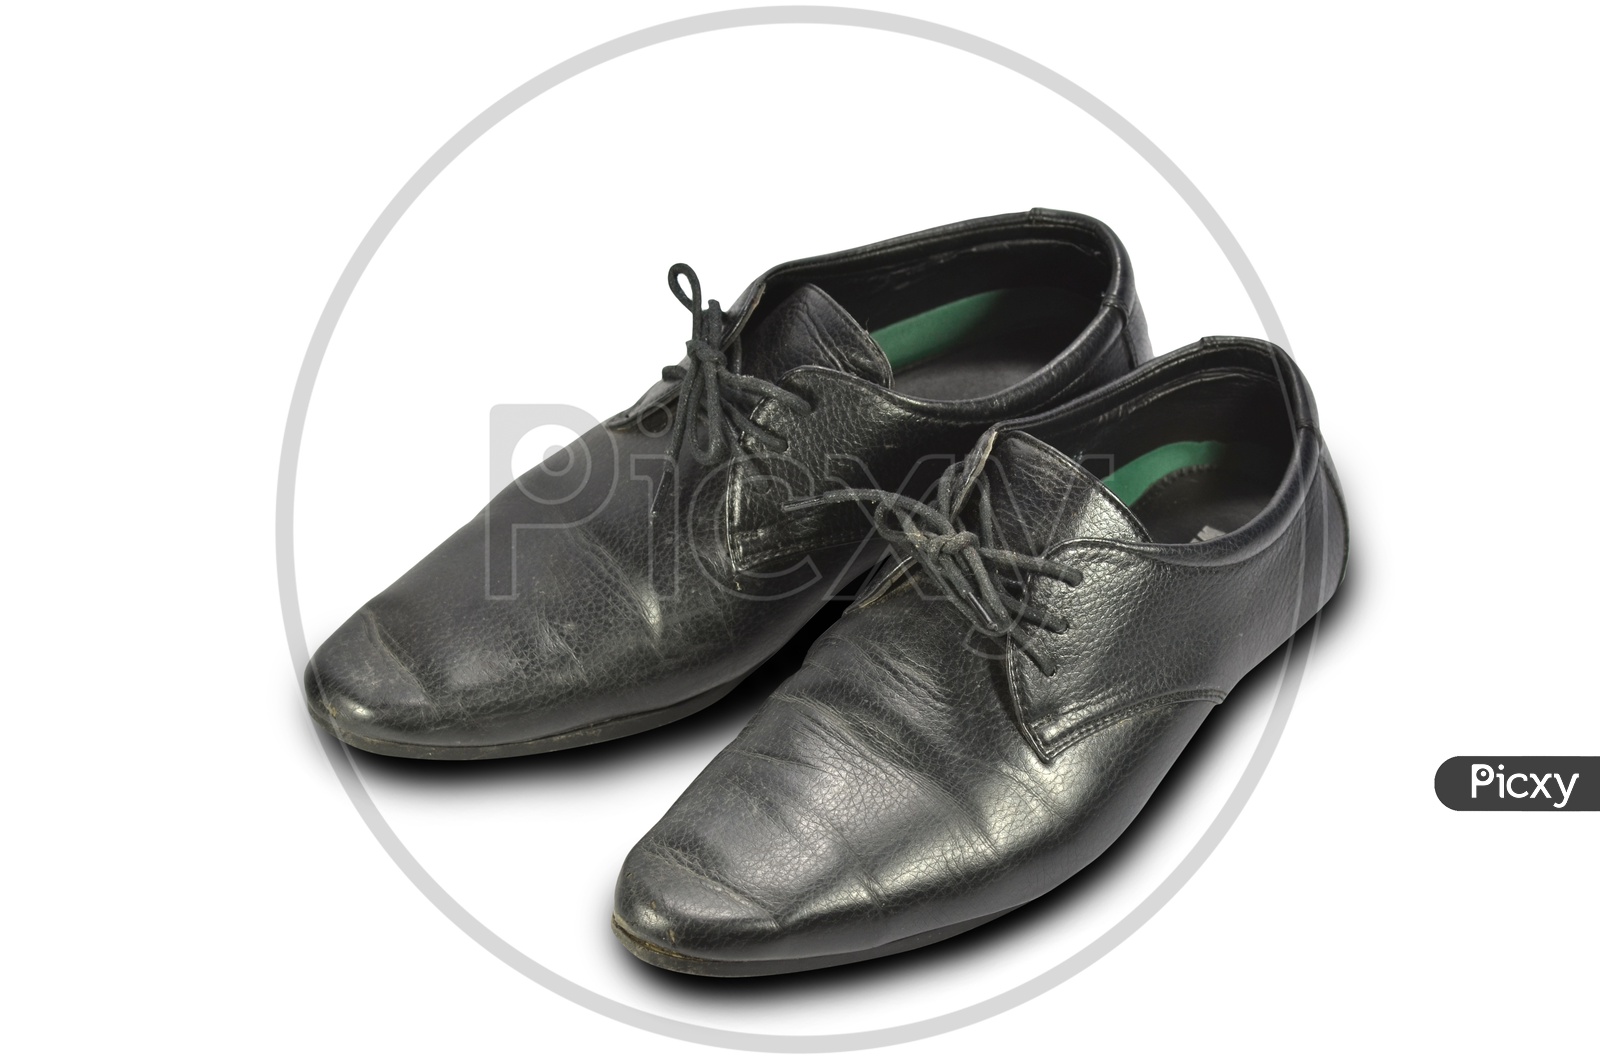 Elegant Men's Black leather Shoe Pair